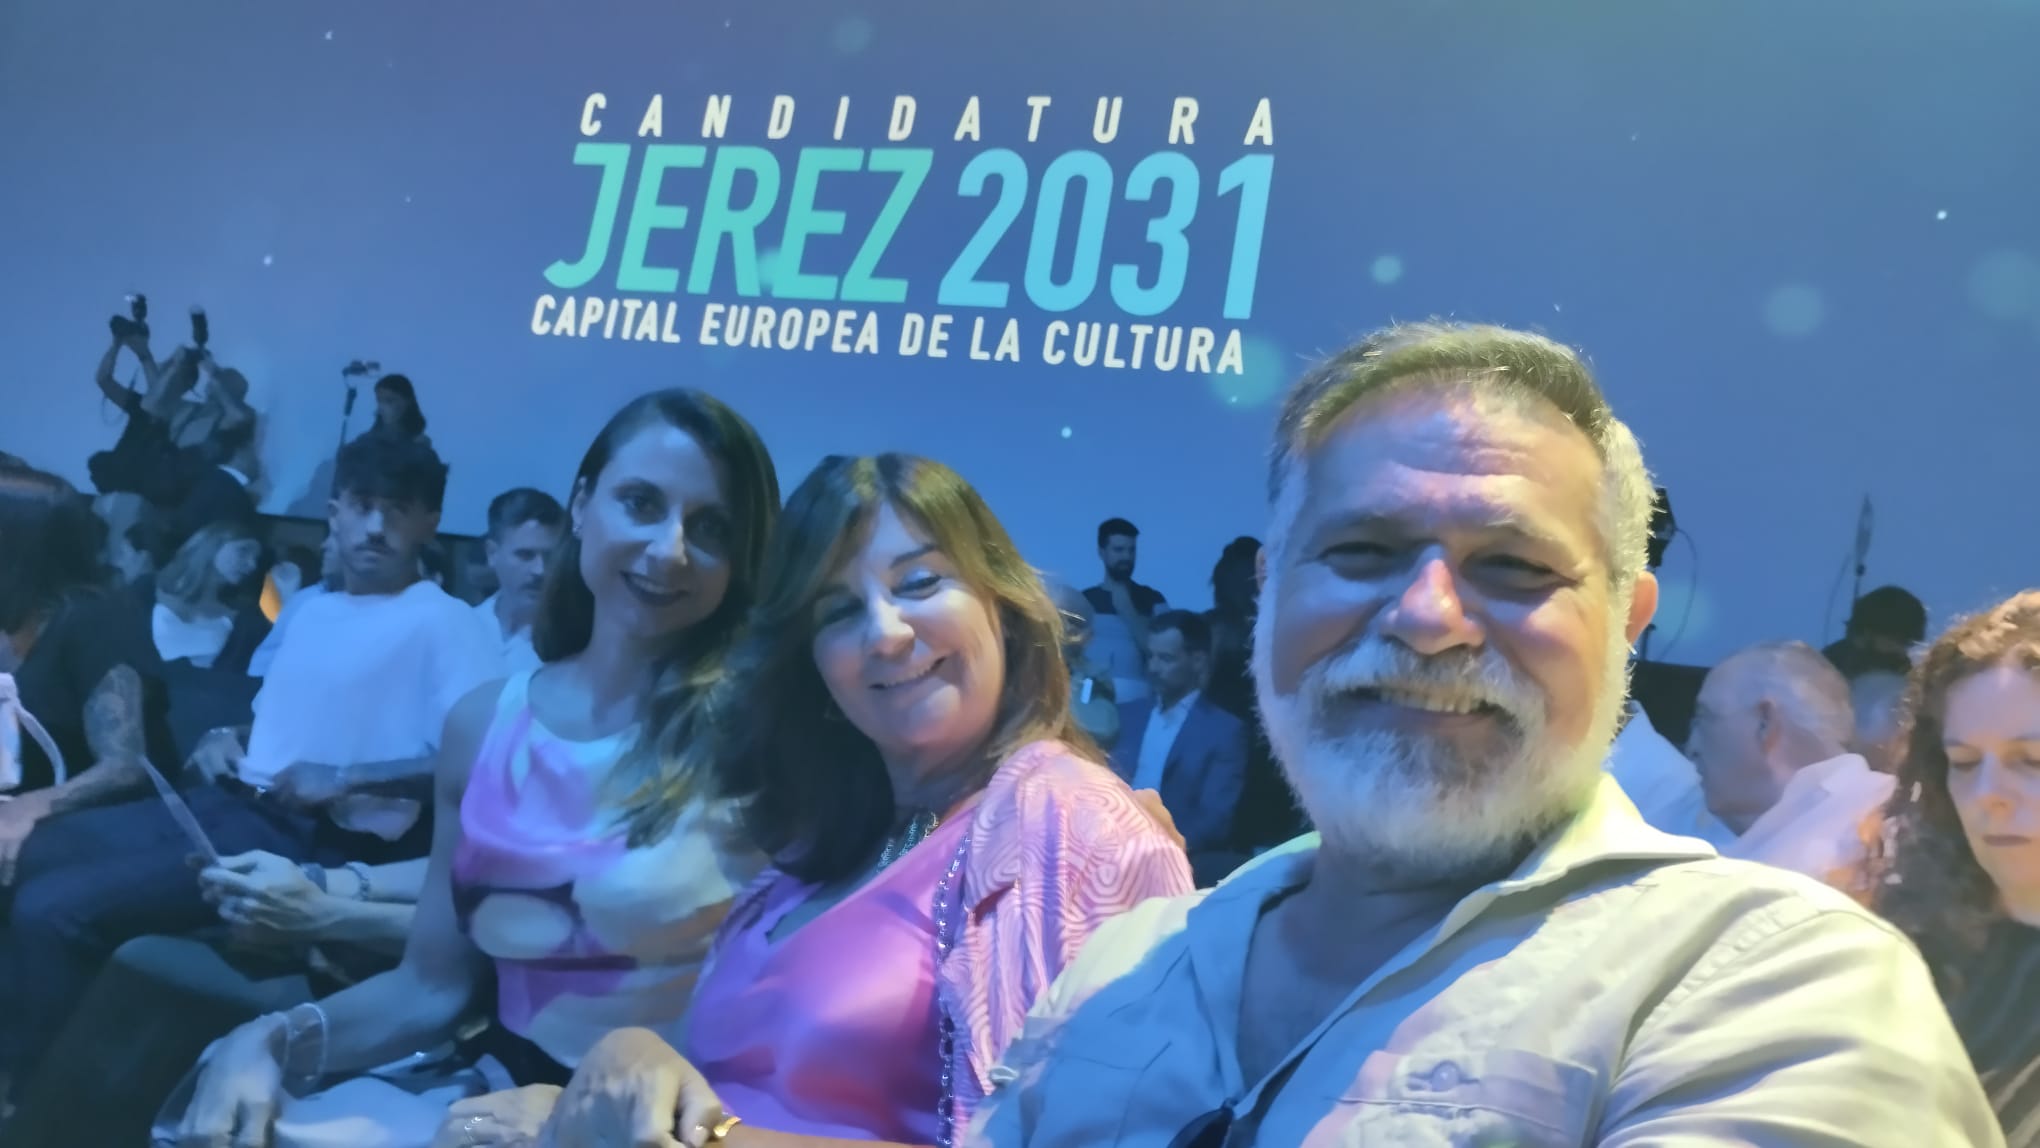 Candidatura Jerez 2031-Capital europea de la cultura